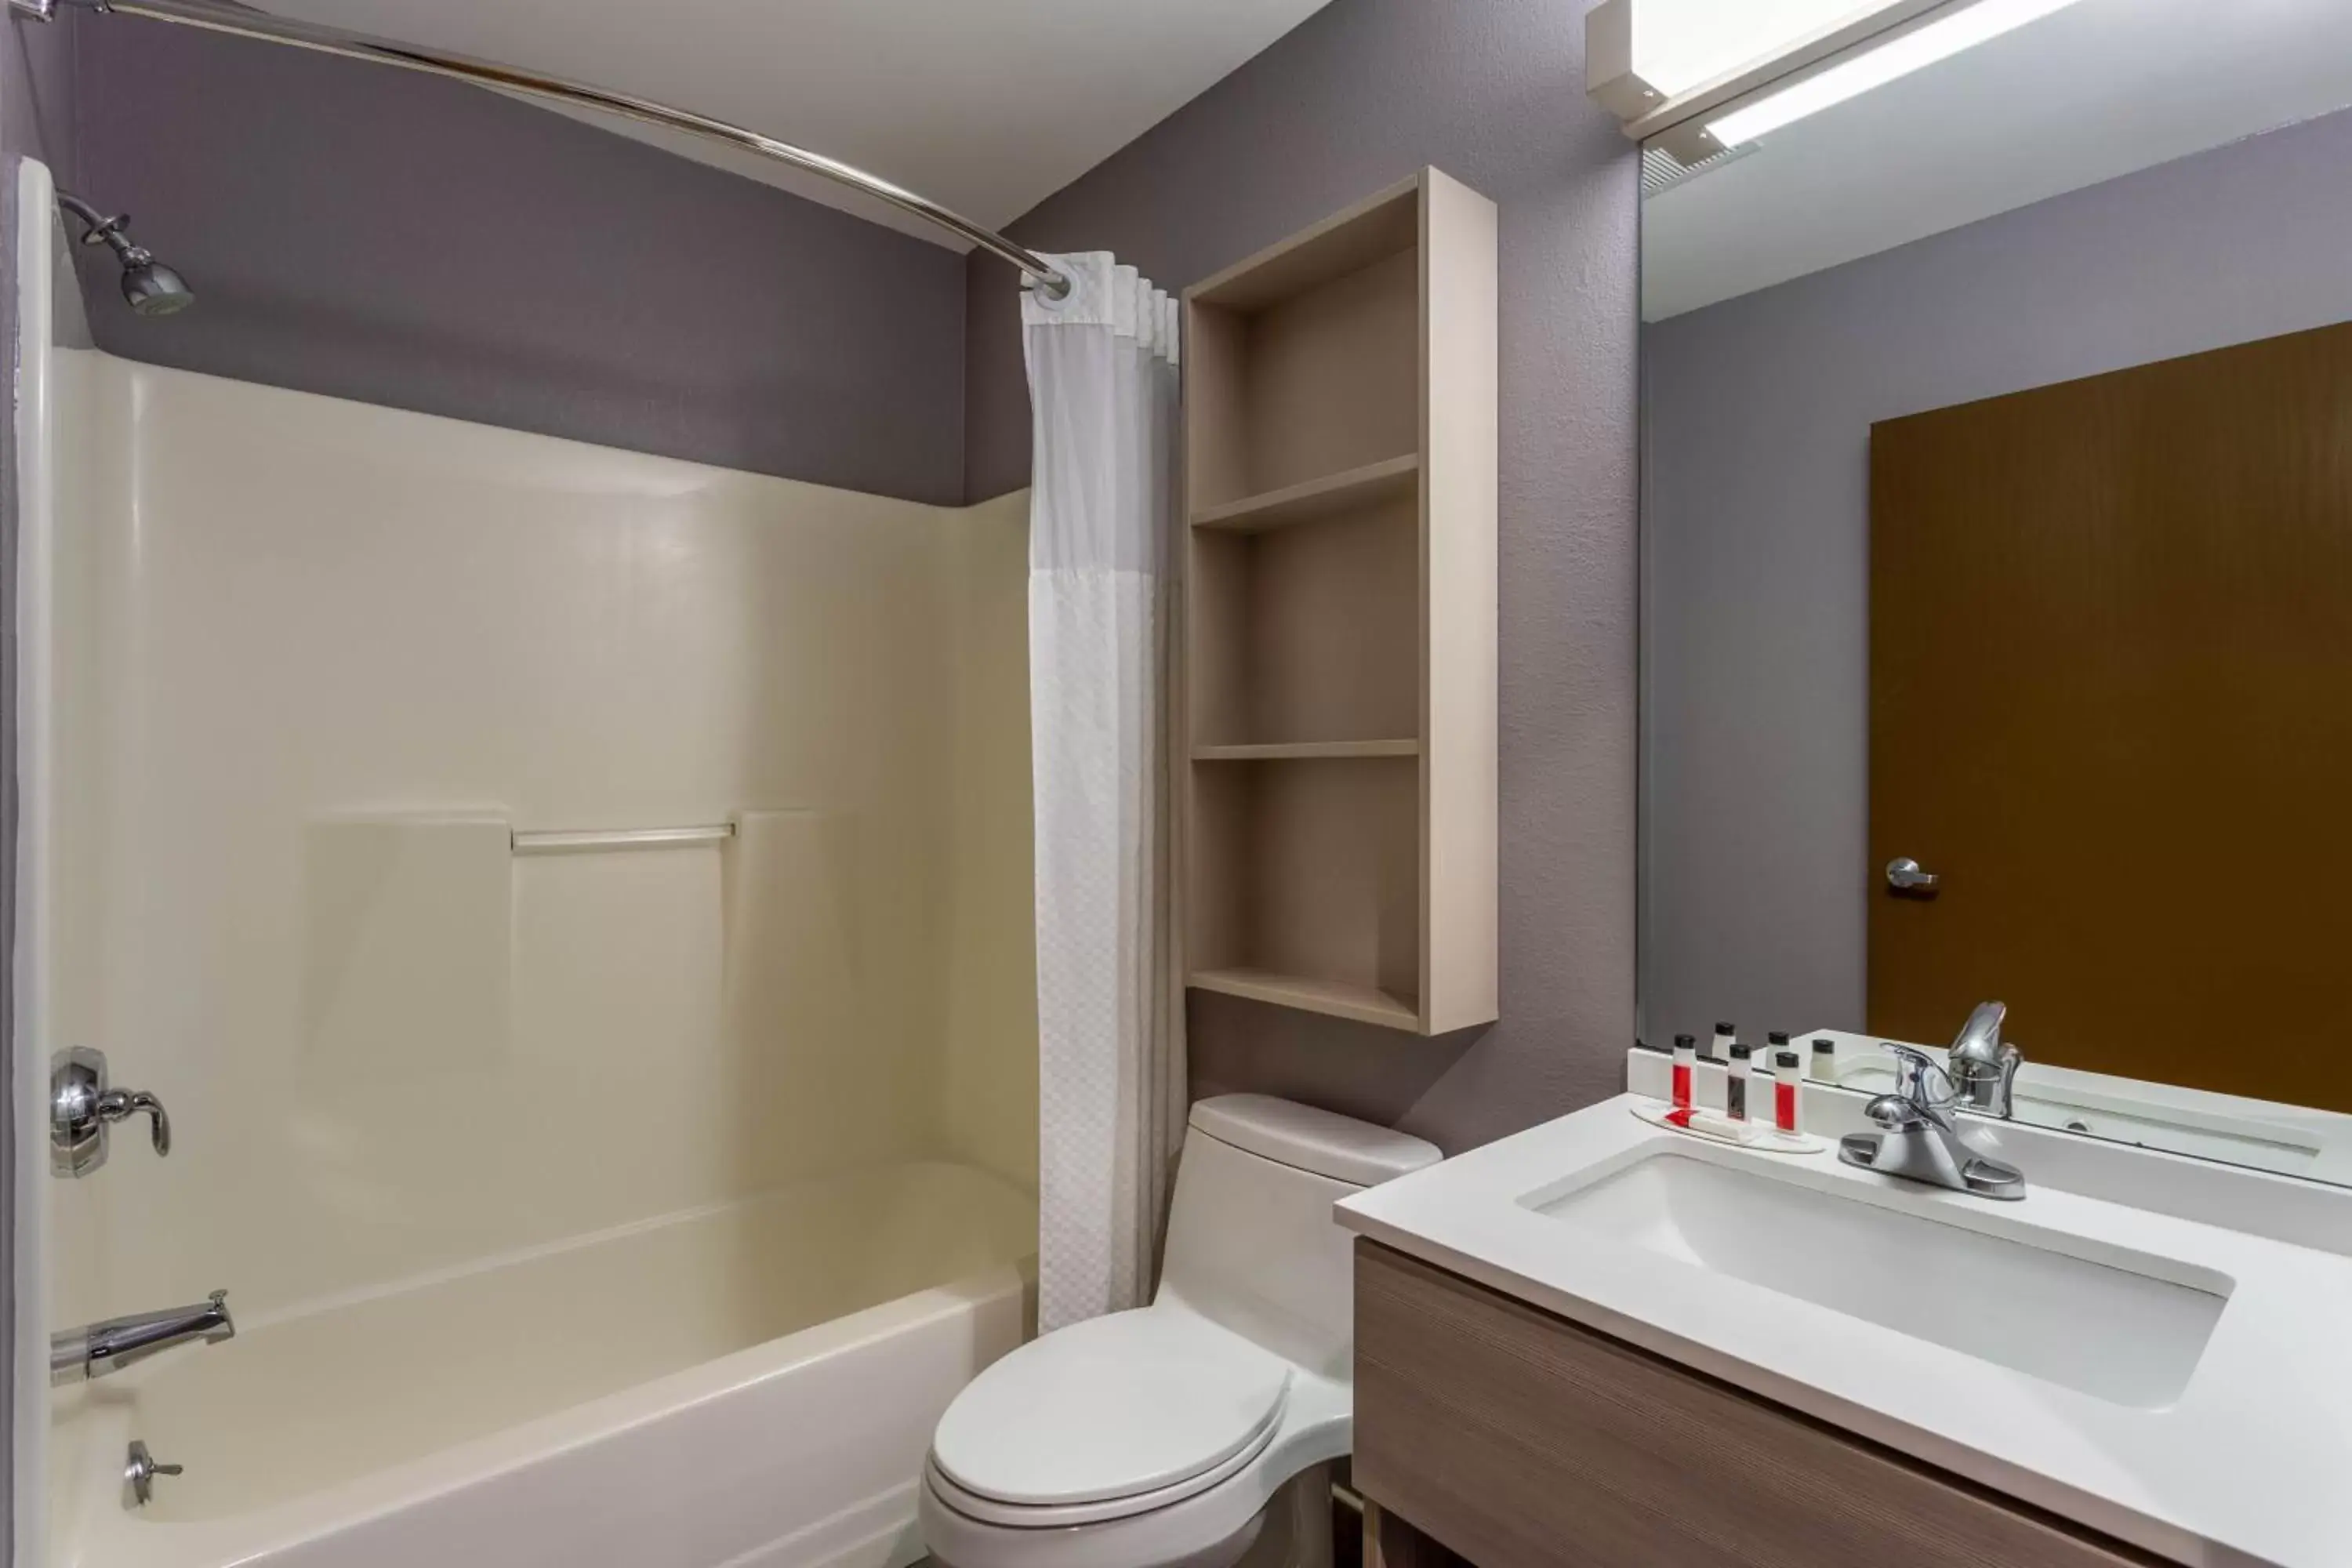 Bathroom in Microtel Inn & Suites by Wyndham Bethel/Danbury